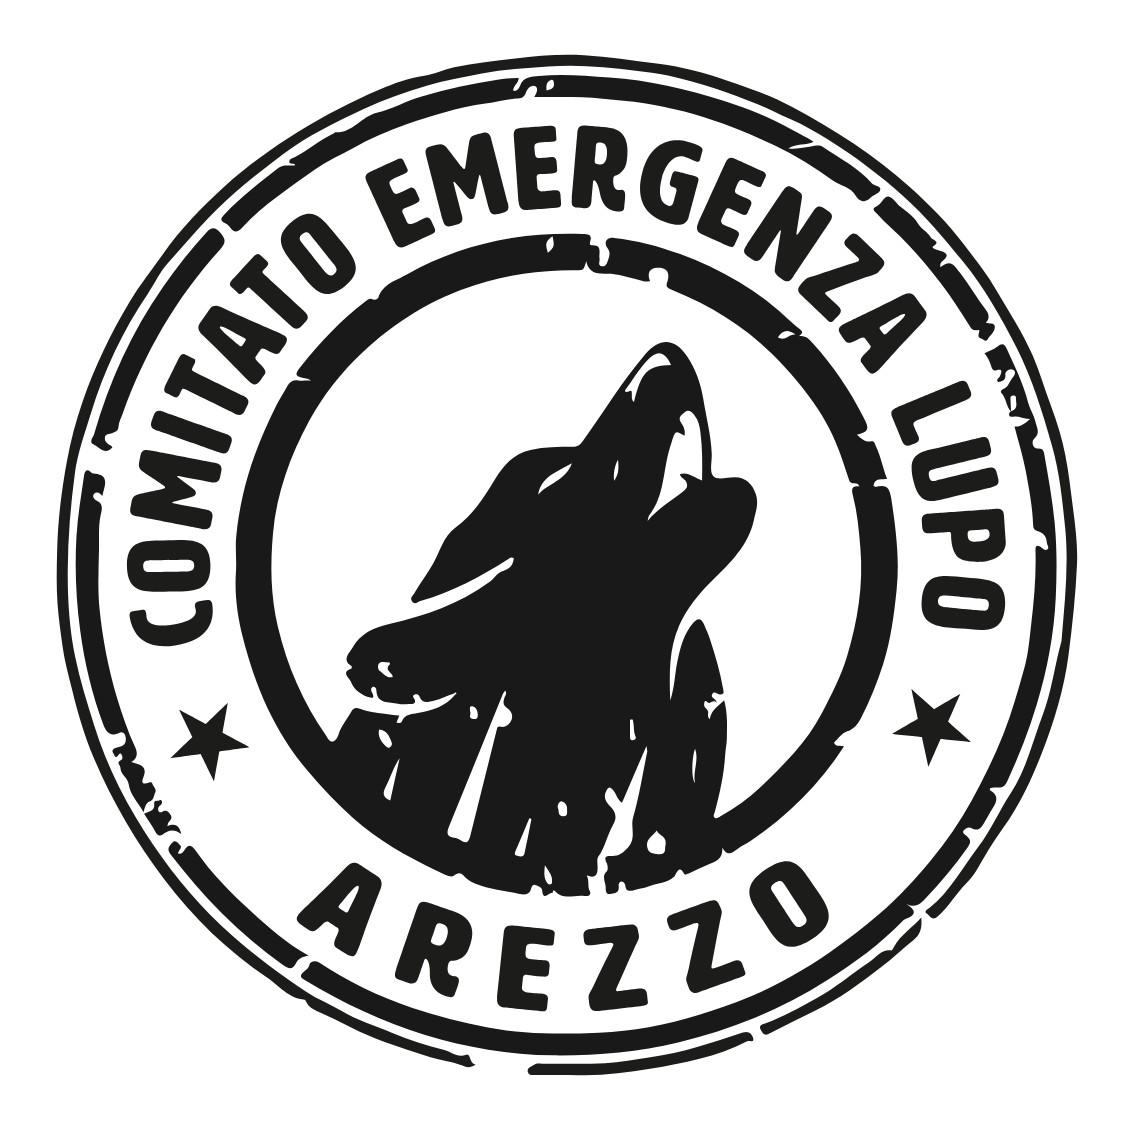 Comitato "Emergenza lupo Arezzo" chiede intervento al Ministero dell’Agricoltura